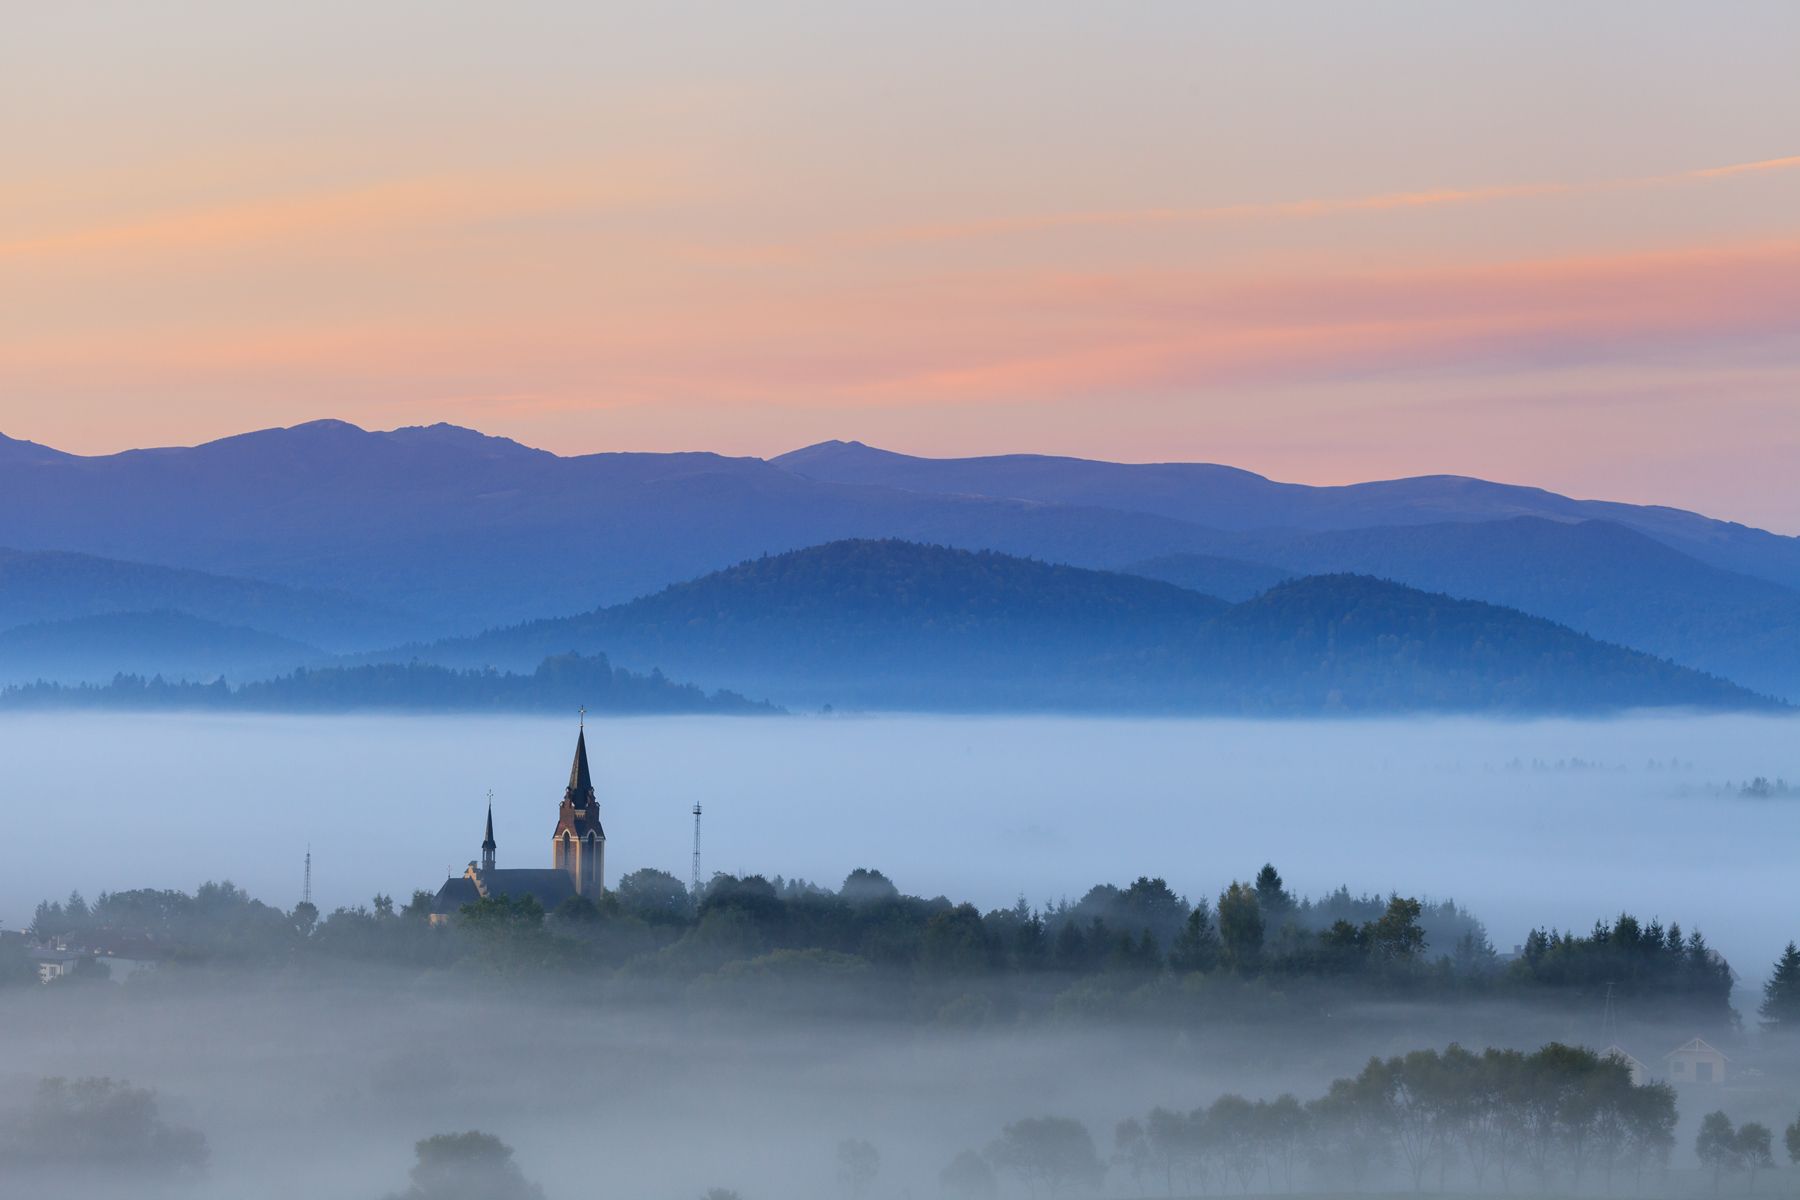 bieszczady, mountains, autumn, foggy, fog, misty, morning, lutowiska, church,  Mirosław Pruchnicki